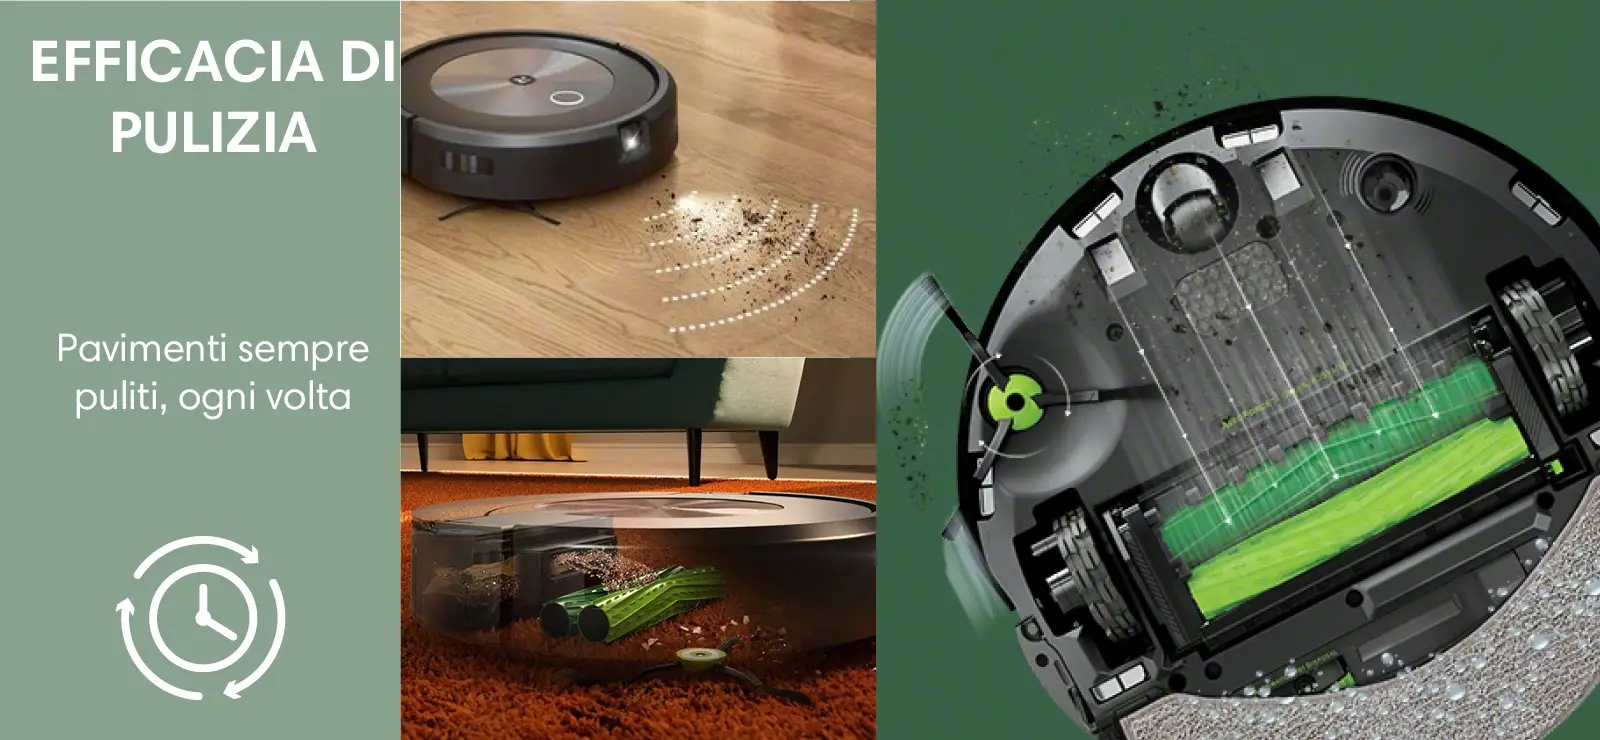 iRobot Roomba Combo j7+, il robot più avanzato al mondo